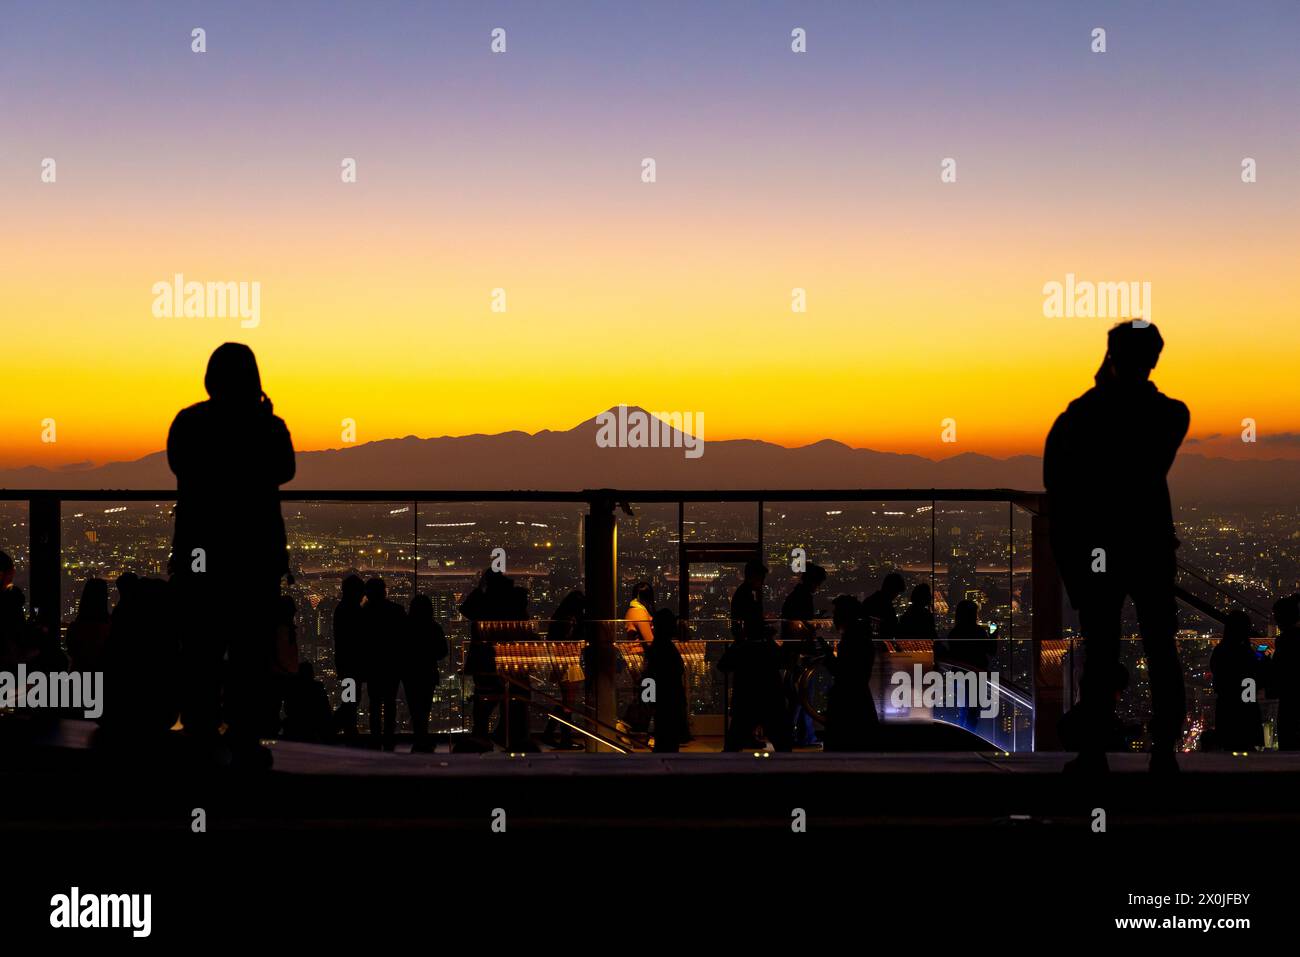 Le persone ammirano il paesaggio urbano di Tokyo con un vivace tramonto, con l'orizzonte della silhouette della montagna Fuji Foto Stock